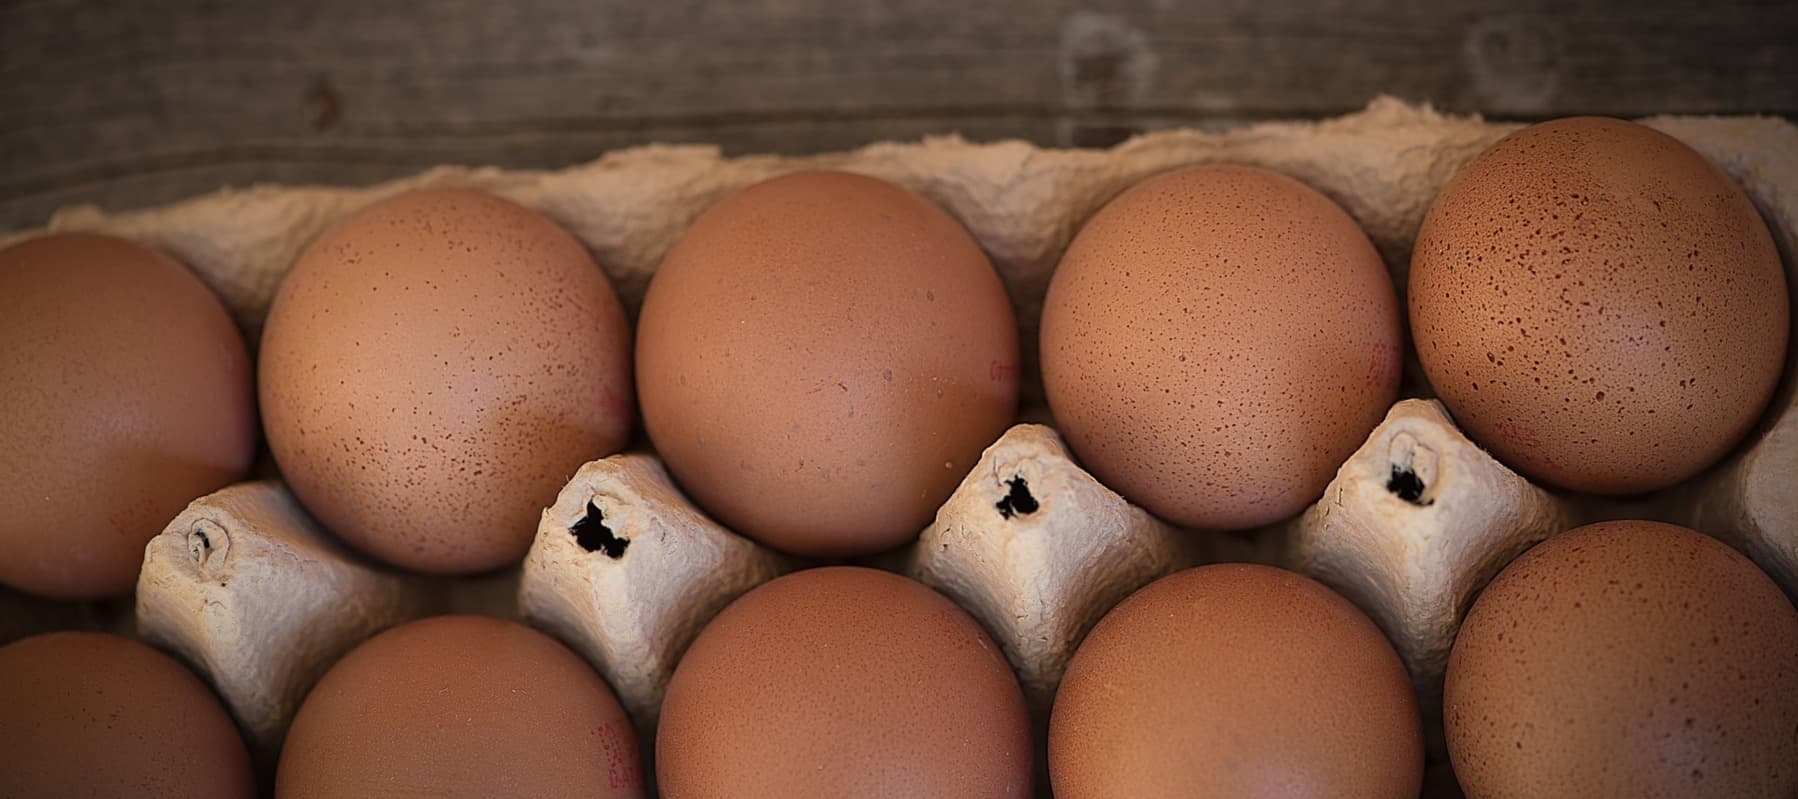 Фото новости: "Оптовые цены на куриные яйца выросли за сентябрь почти на 9%"